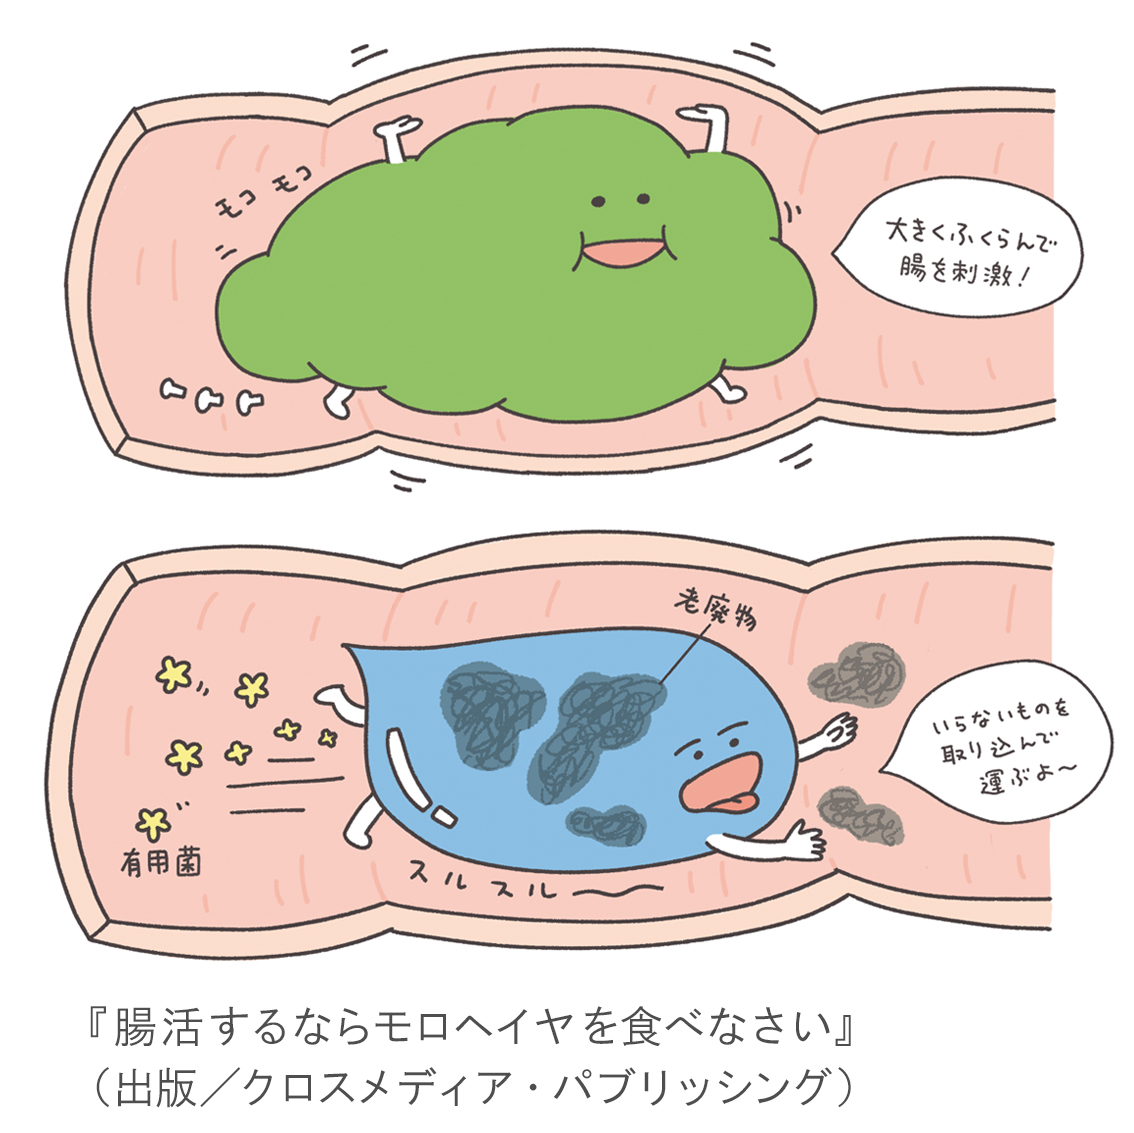 『腸活するならモロヘイヤを食べなさい』挿画イラスト